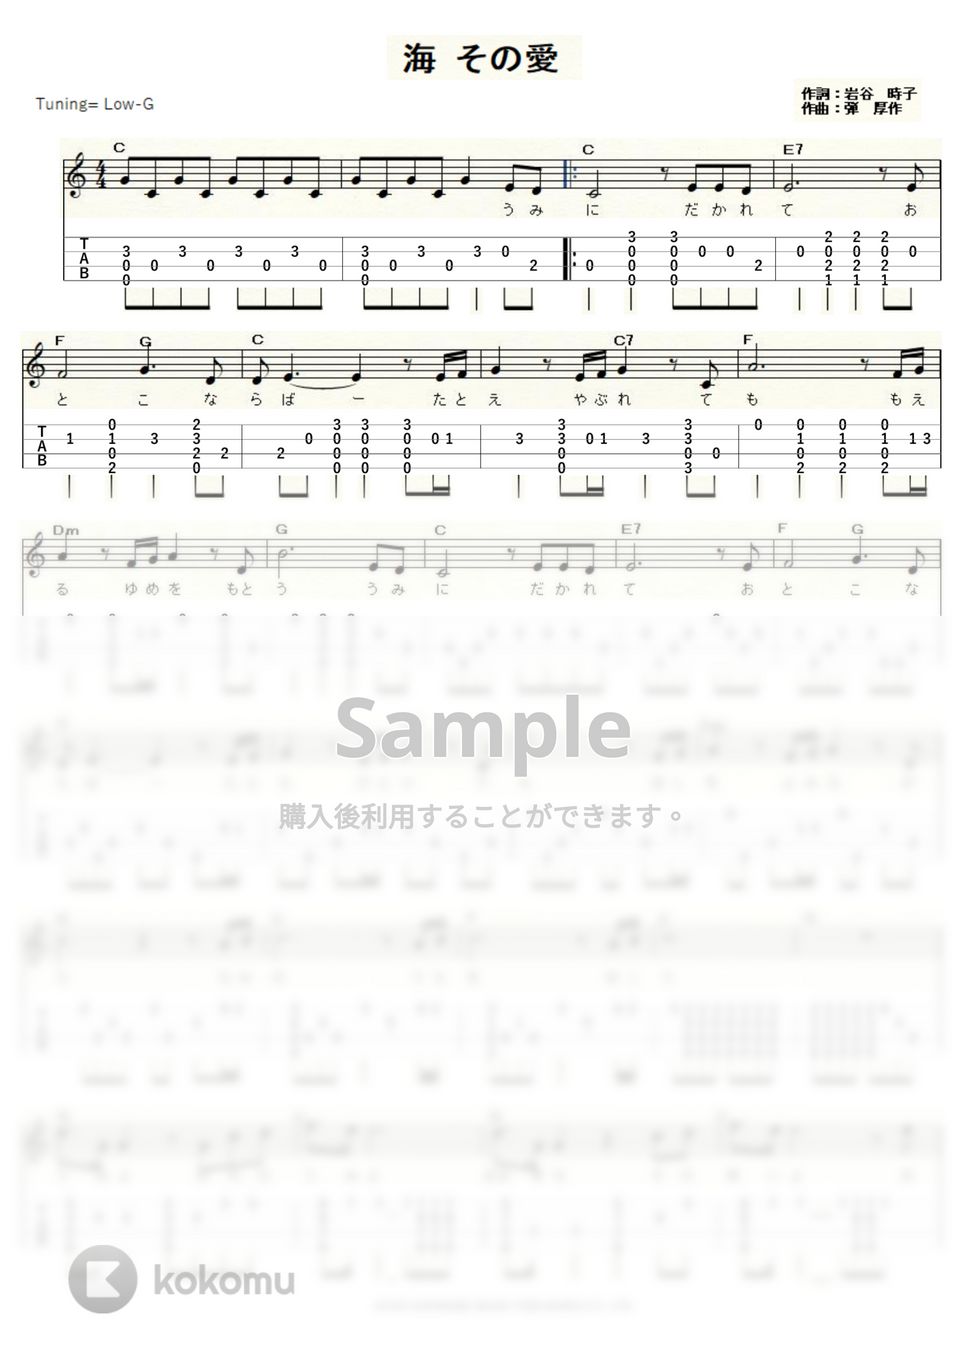 加山雄三 - 海 その愛 (ｳｸﾚﾚｿﾛ/Low-G/中級) by ukulelepapa